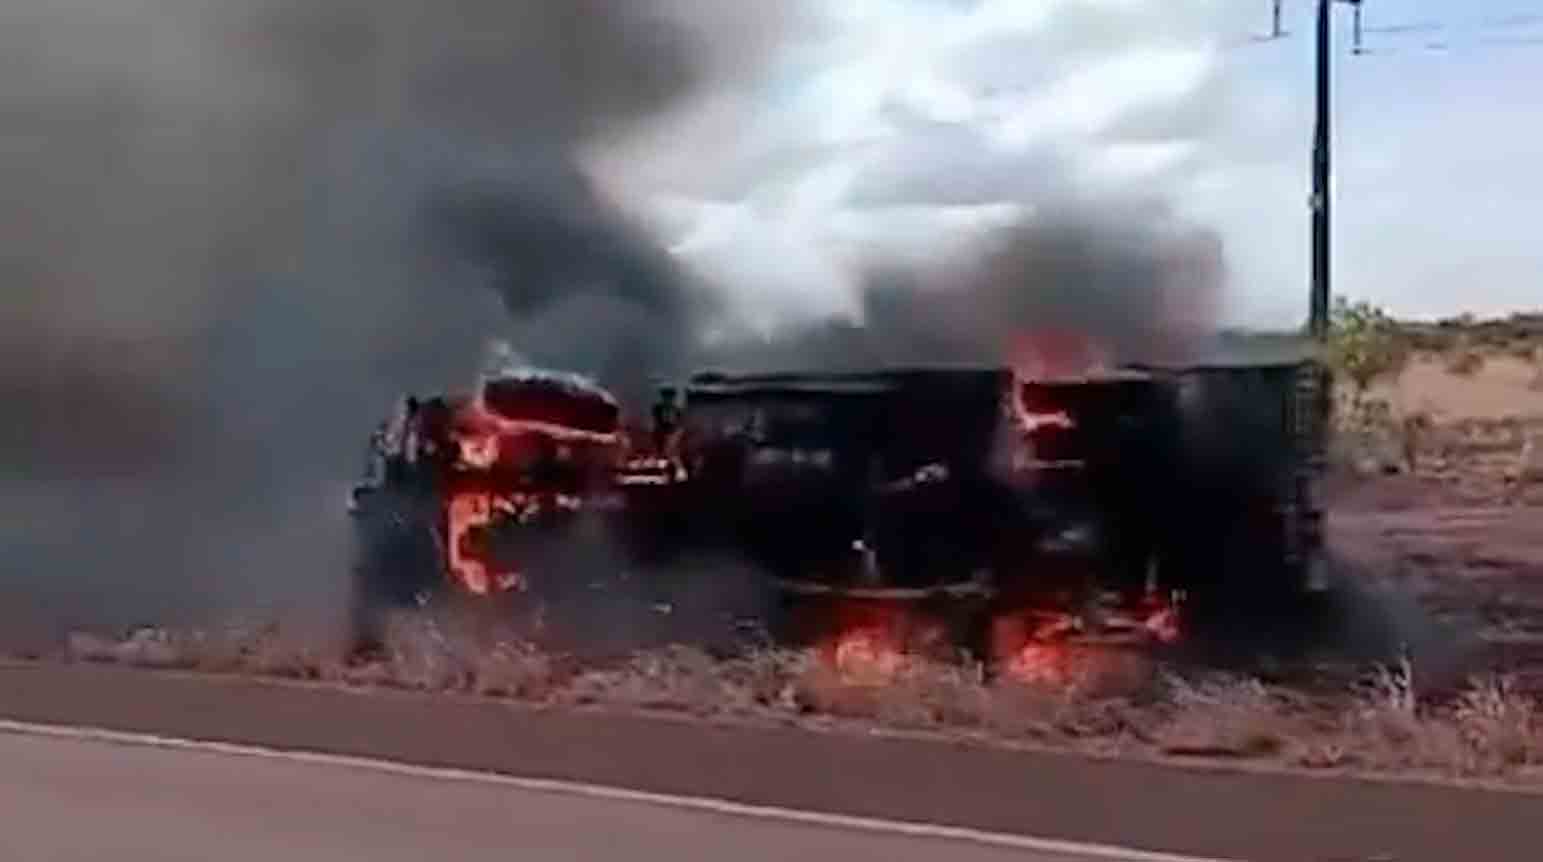 Wideo: Ciężarówka wojskowa eksploduje na autostradzie na granicy między Brazylią a Gujaną. Zdjęcie i wideo: Powtórzenie z Twittera @NoticiaeGuerra / @hoje_no